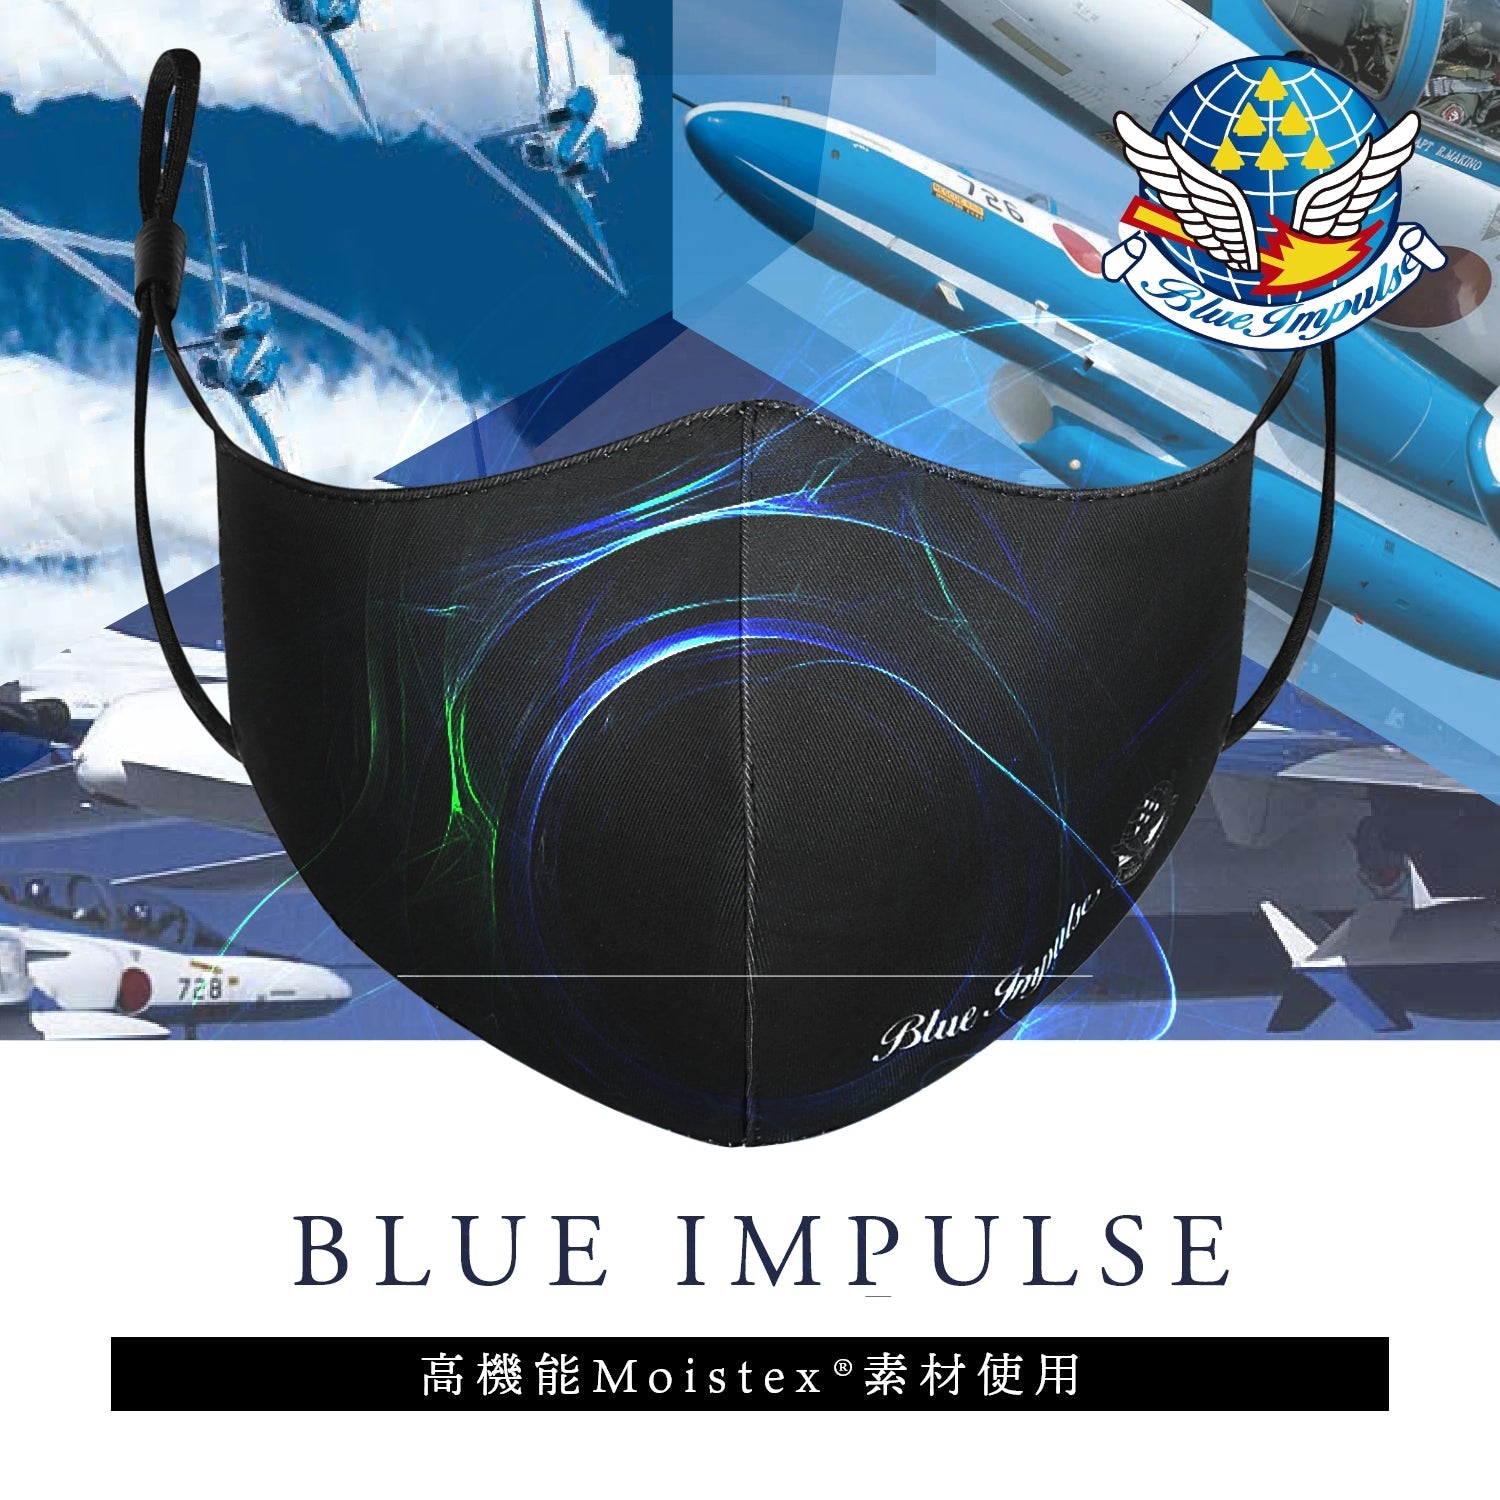 ブルーインパルス正式ライセンス スポーツマスク - 公式通販サイト「アニメコレクション/Anime Collection」